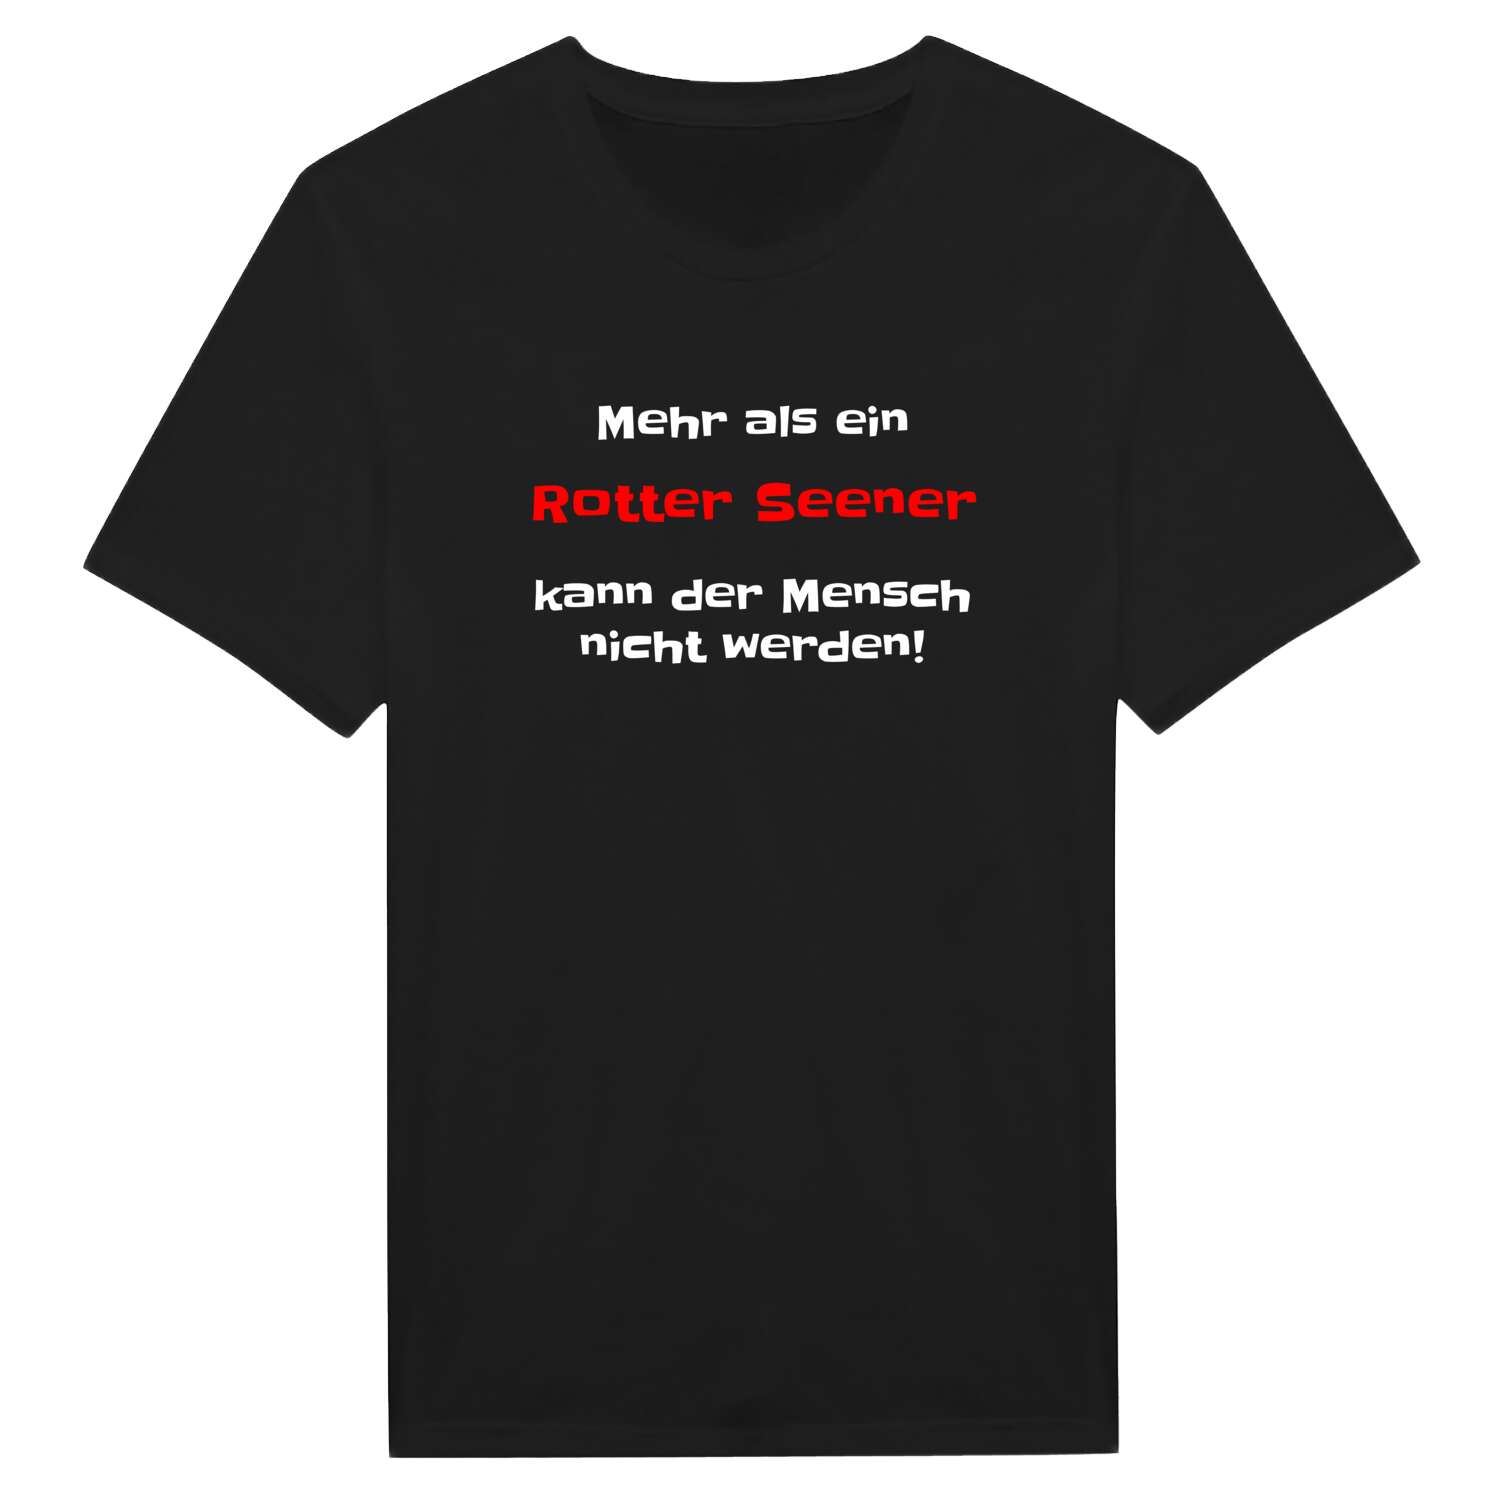 Rotter See T-Shirt »Mehr als ein«